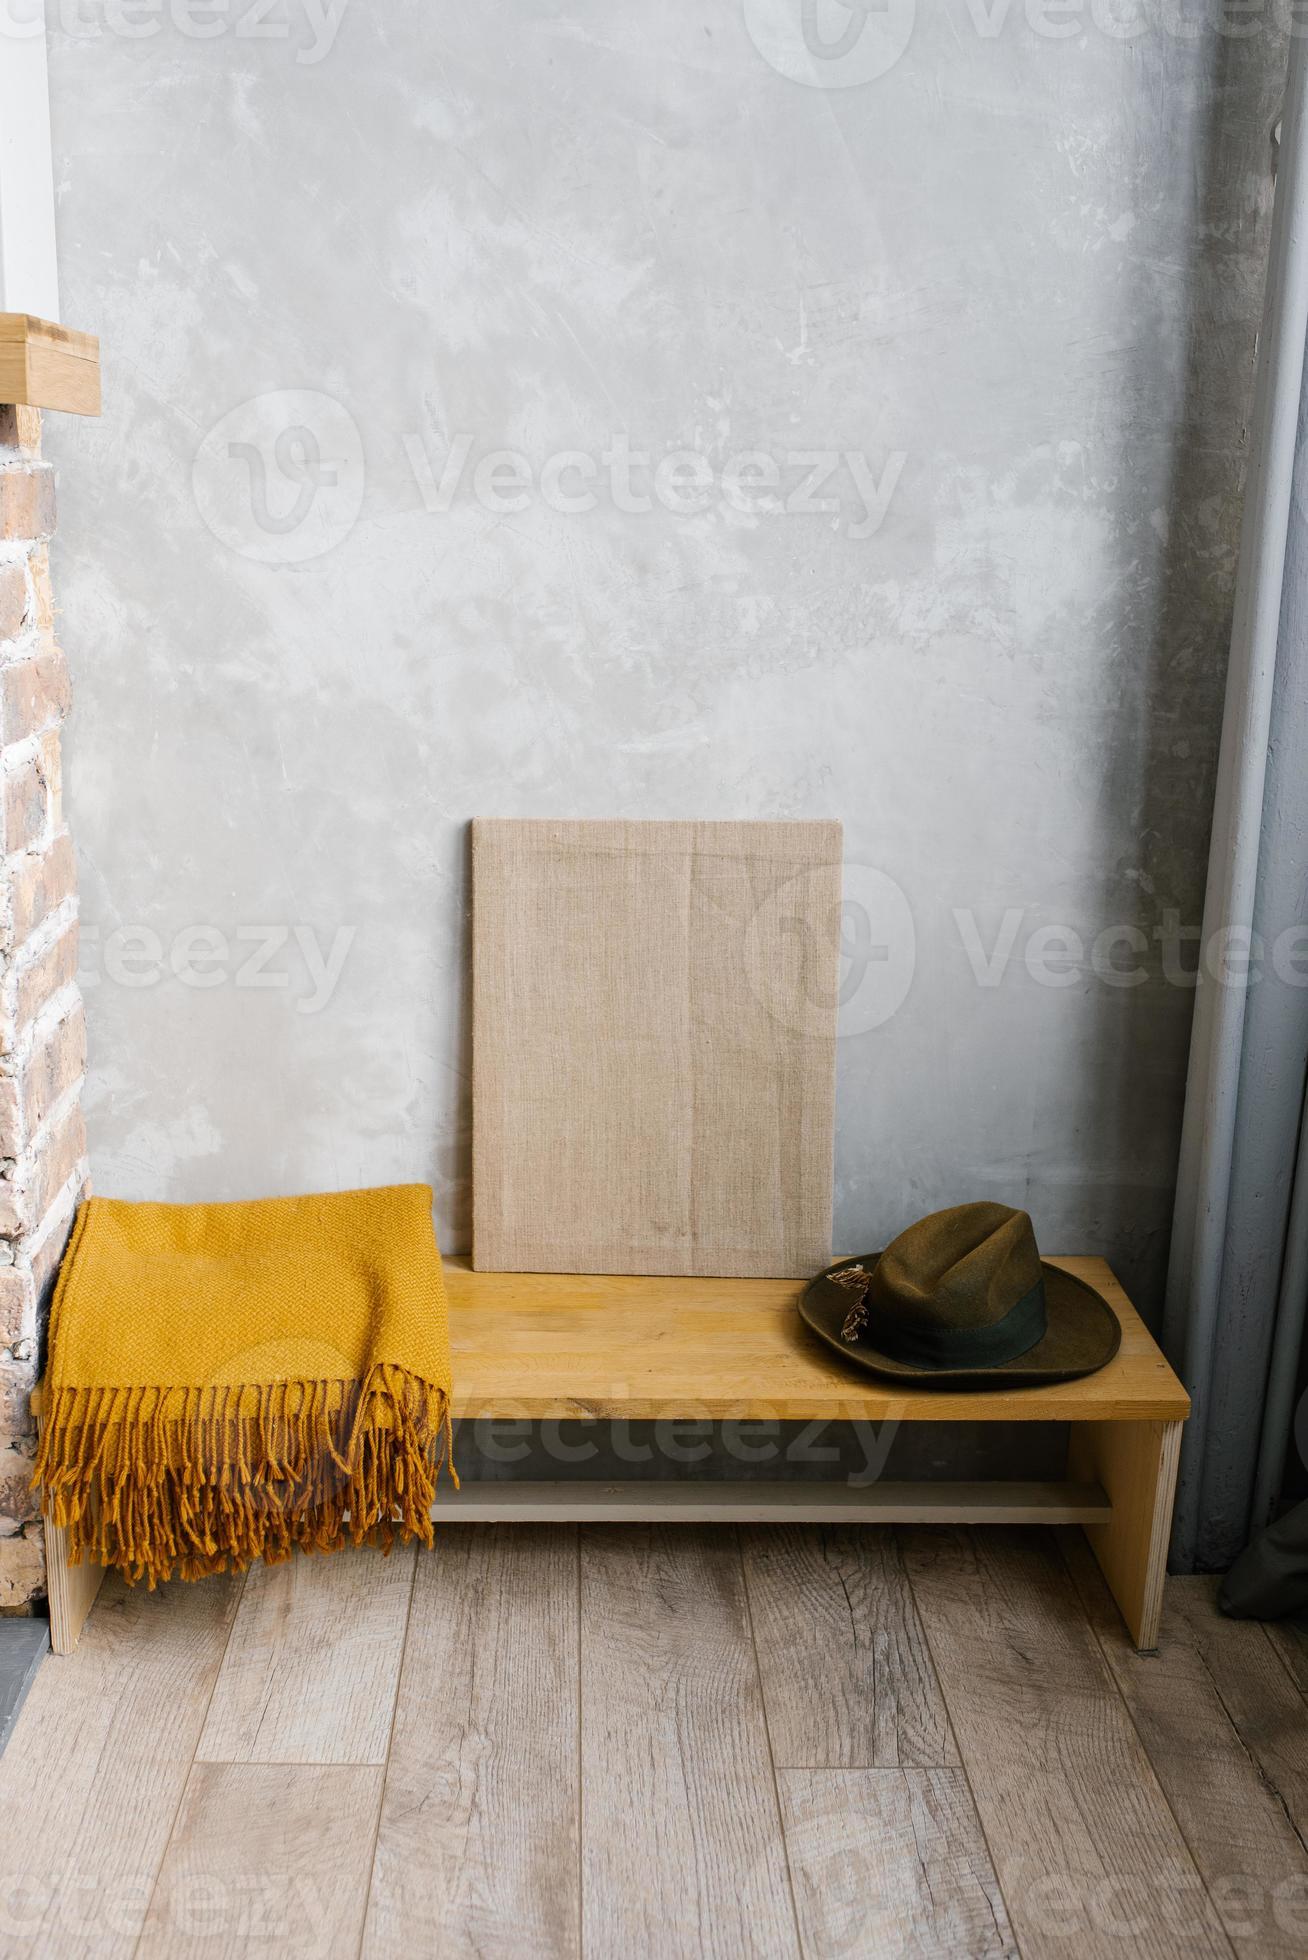 xadrez marrom, chapéu de feltro e tela em um banco de madeira no